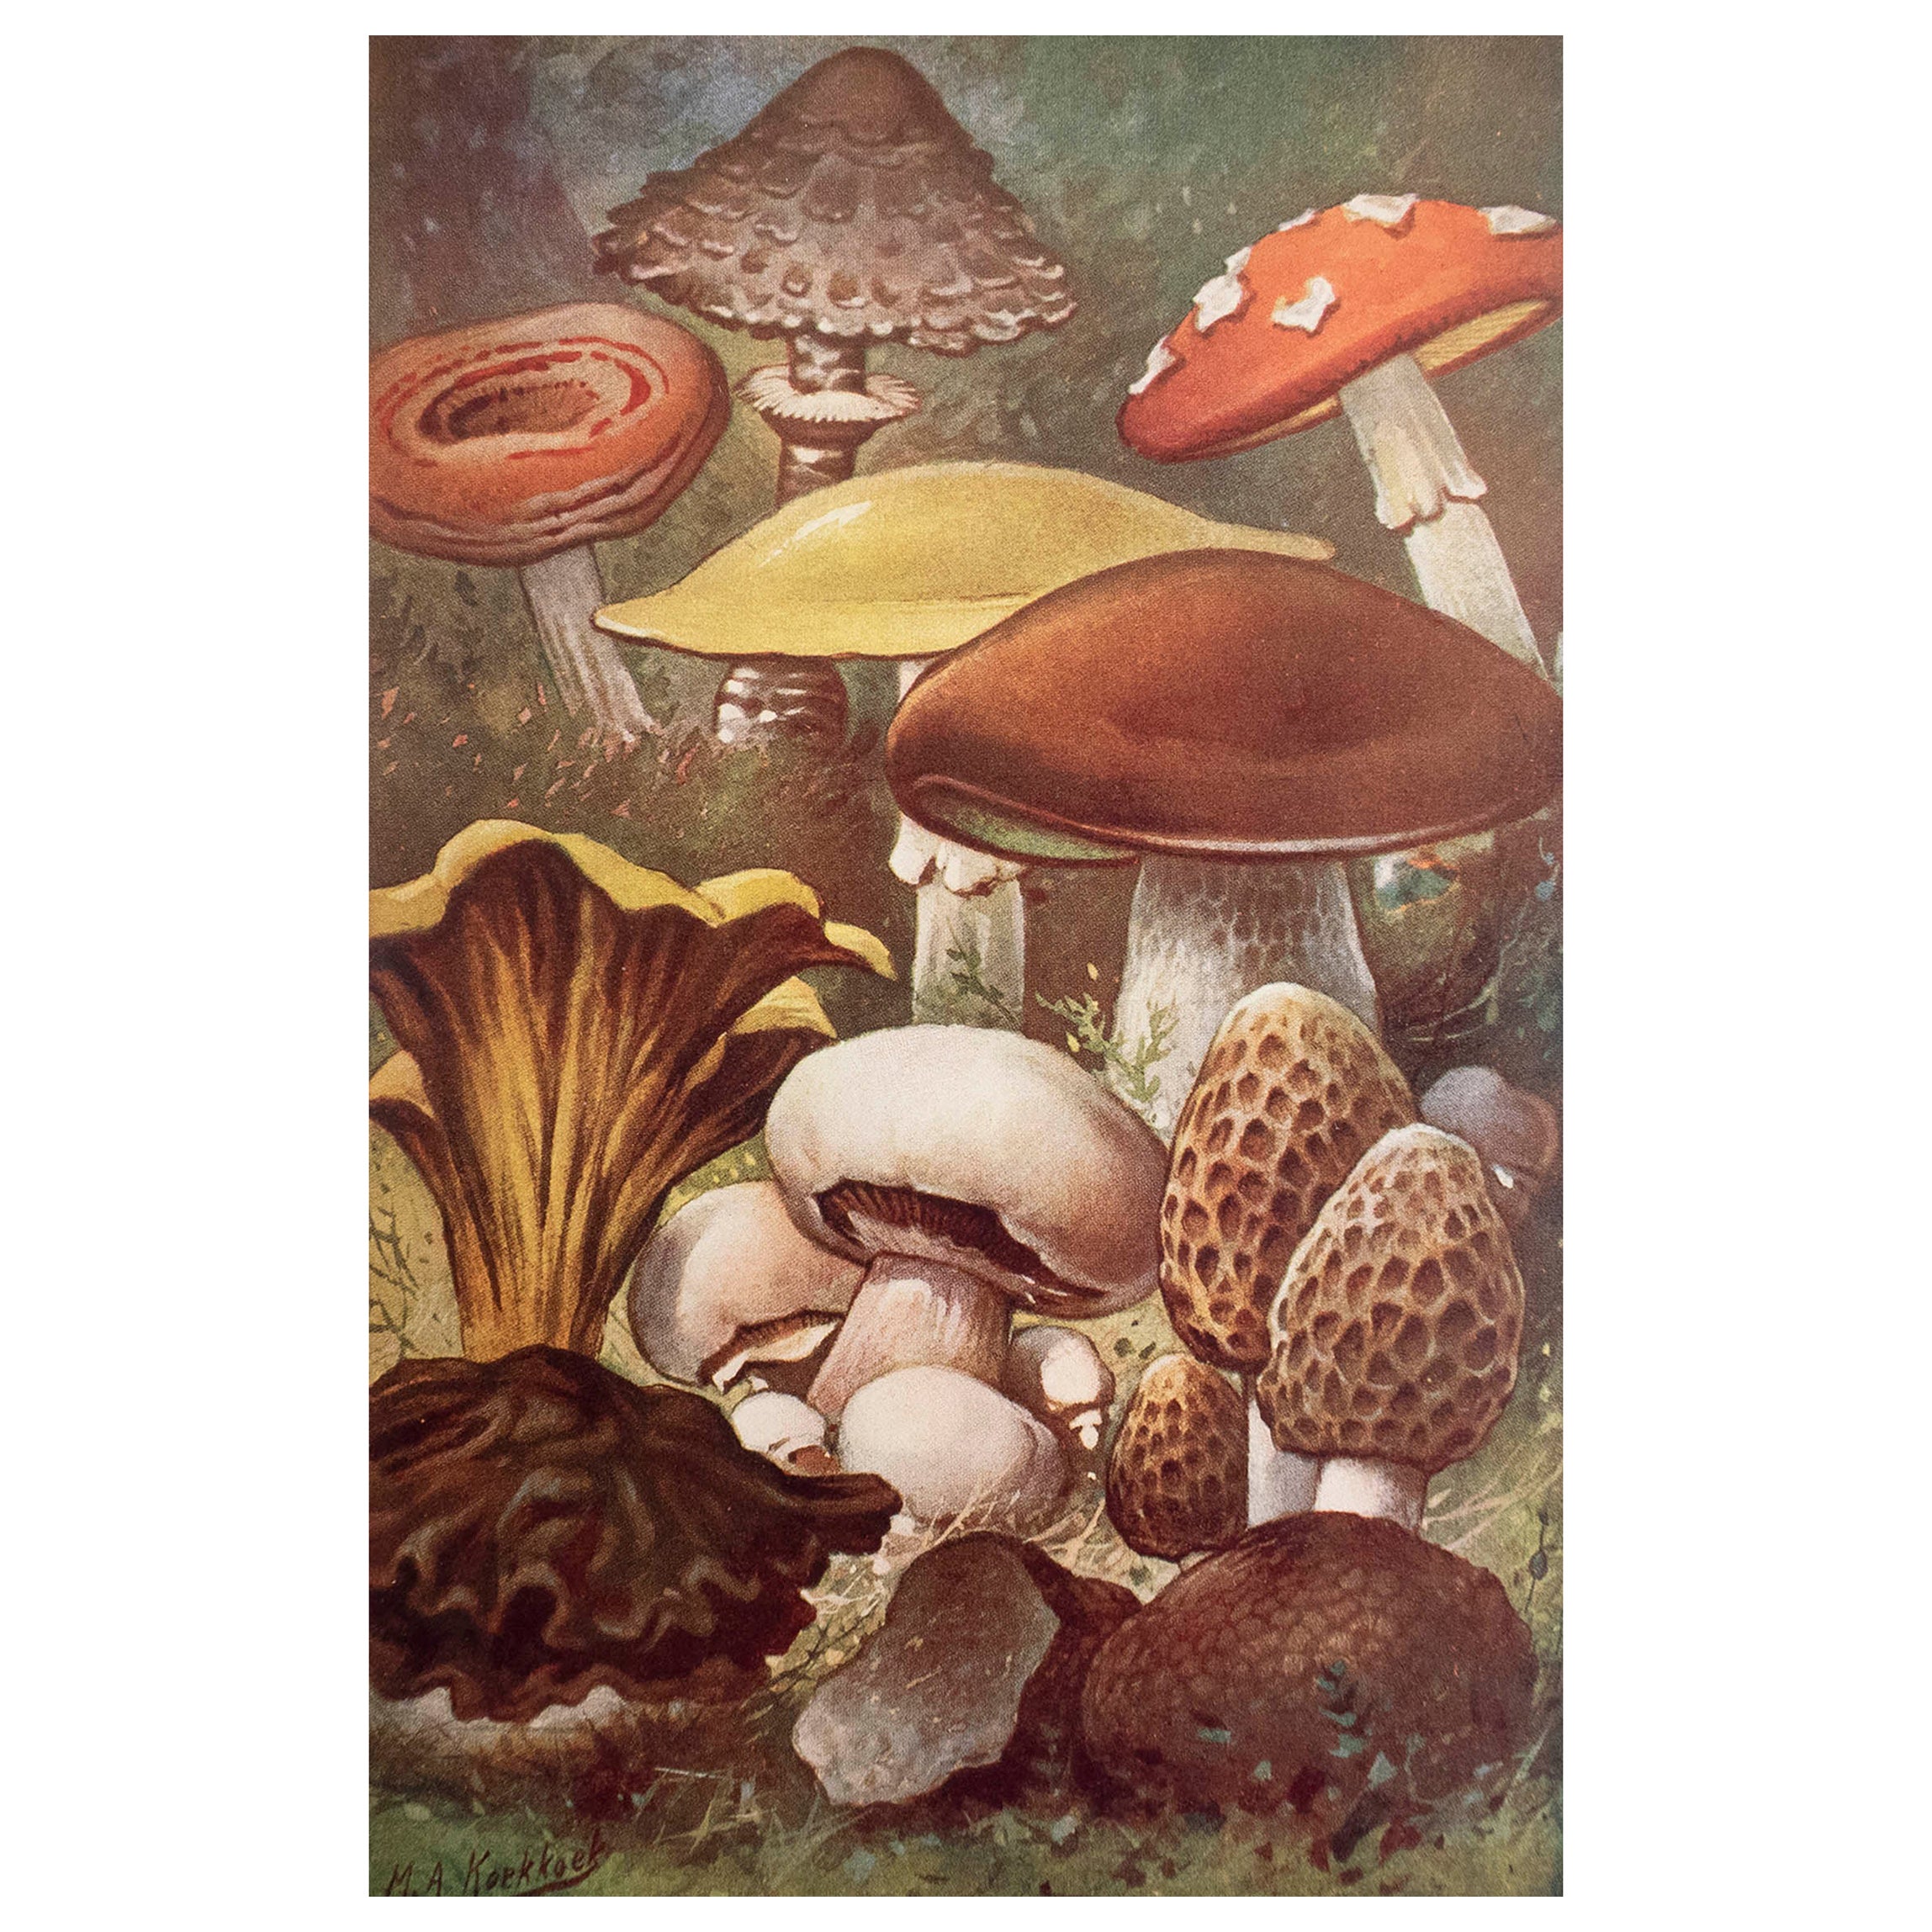 Original Vintage Druck von Pilzen, um 1900